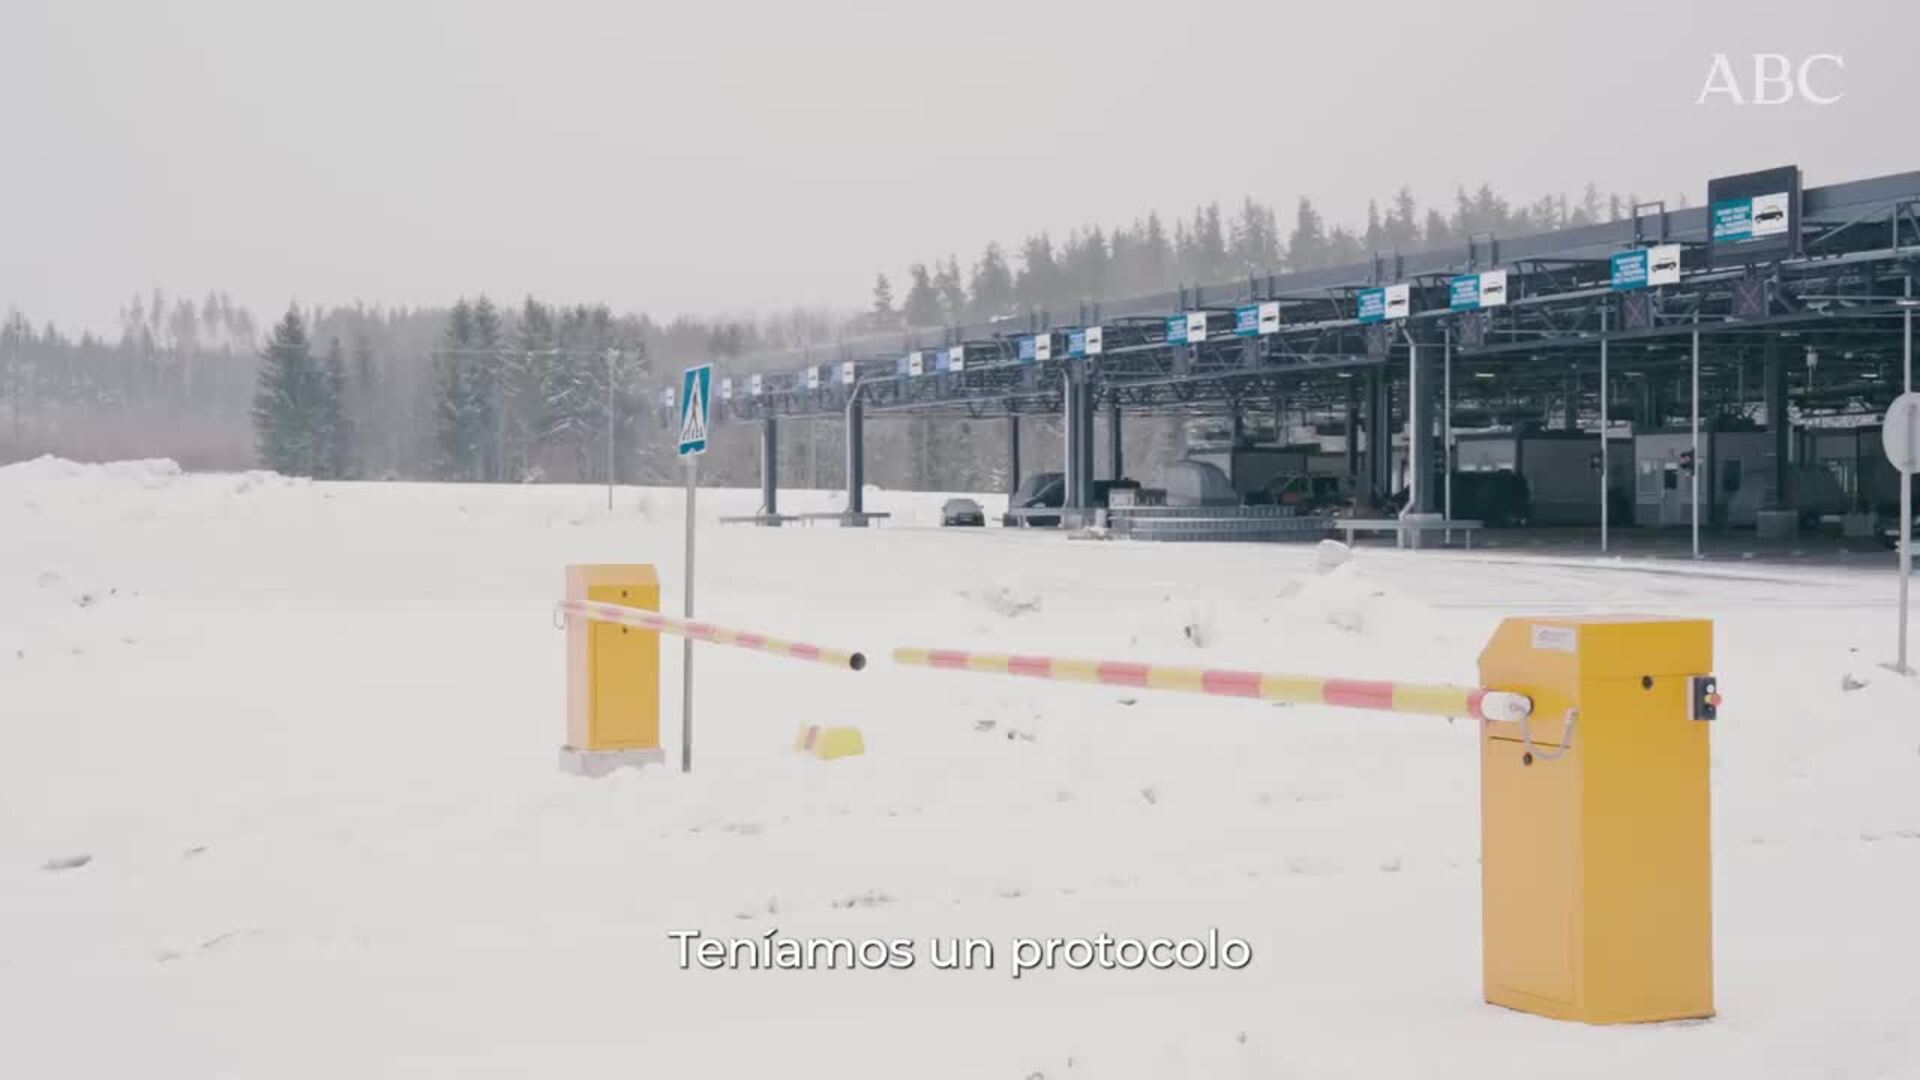 Las vallas de uno de los pasos fronterizos entre Rusia y Finlandia